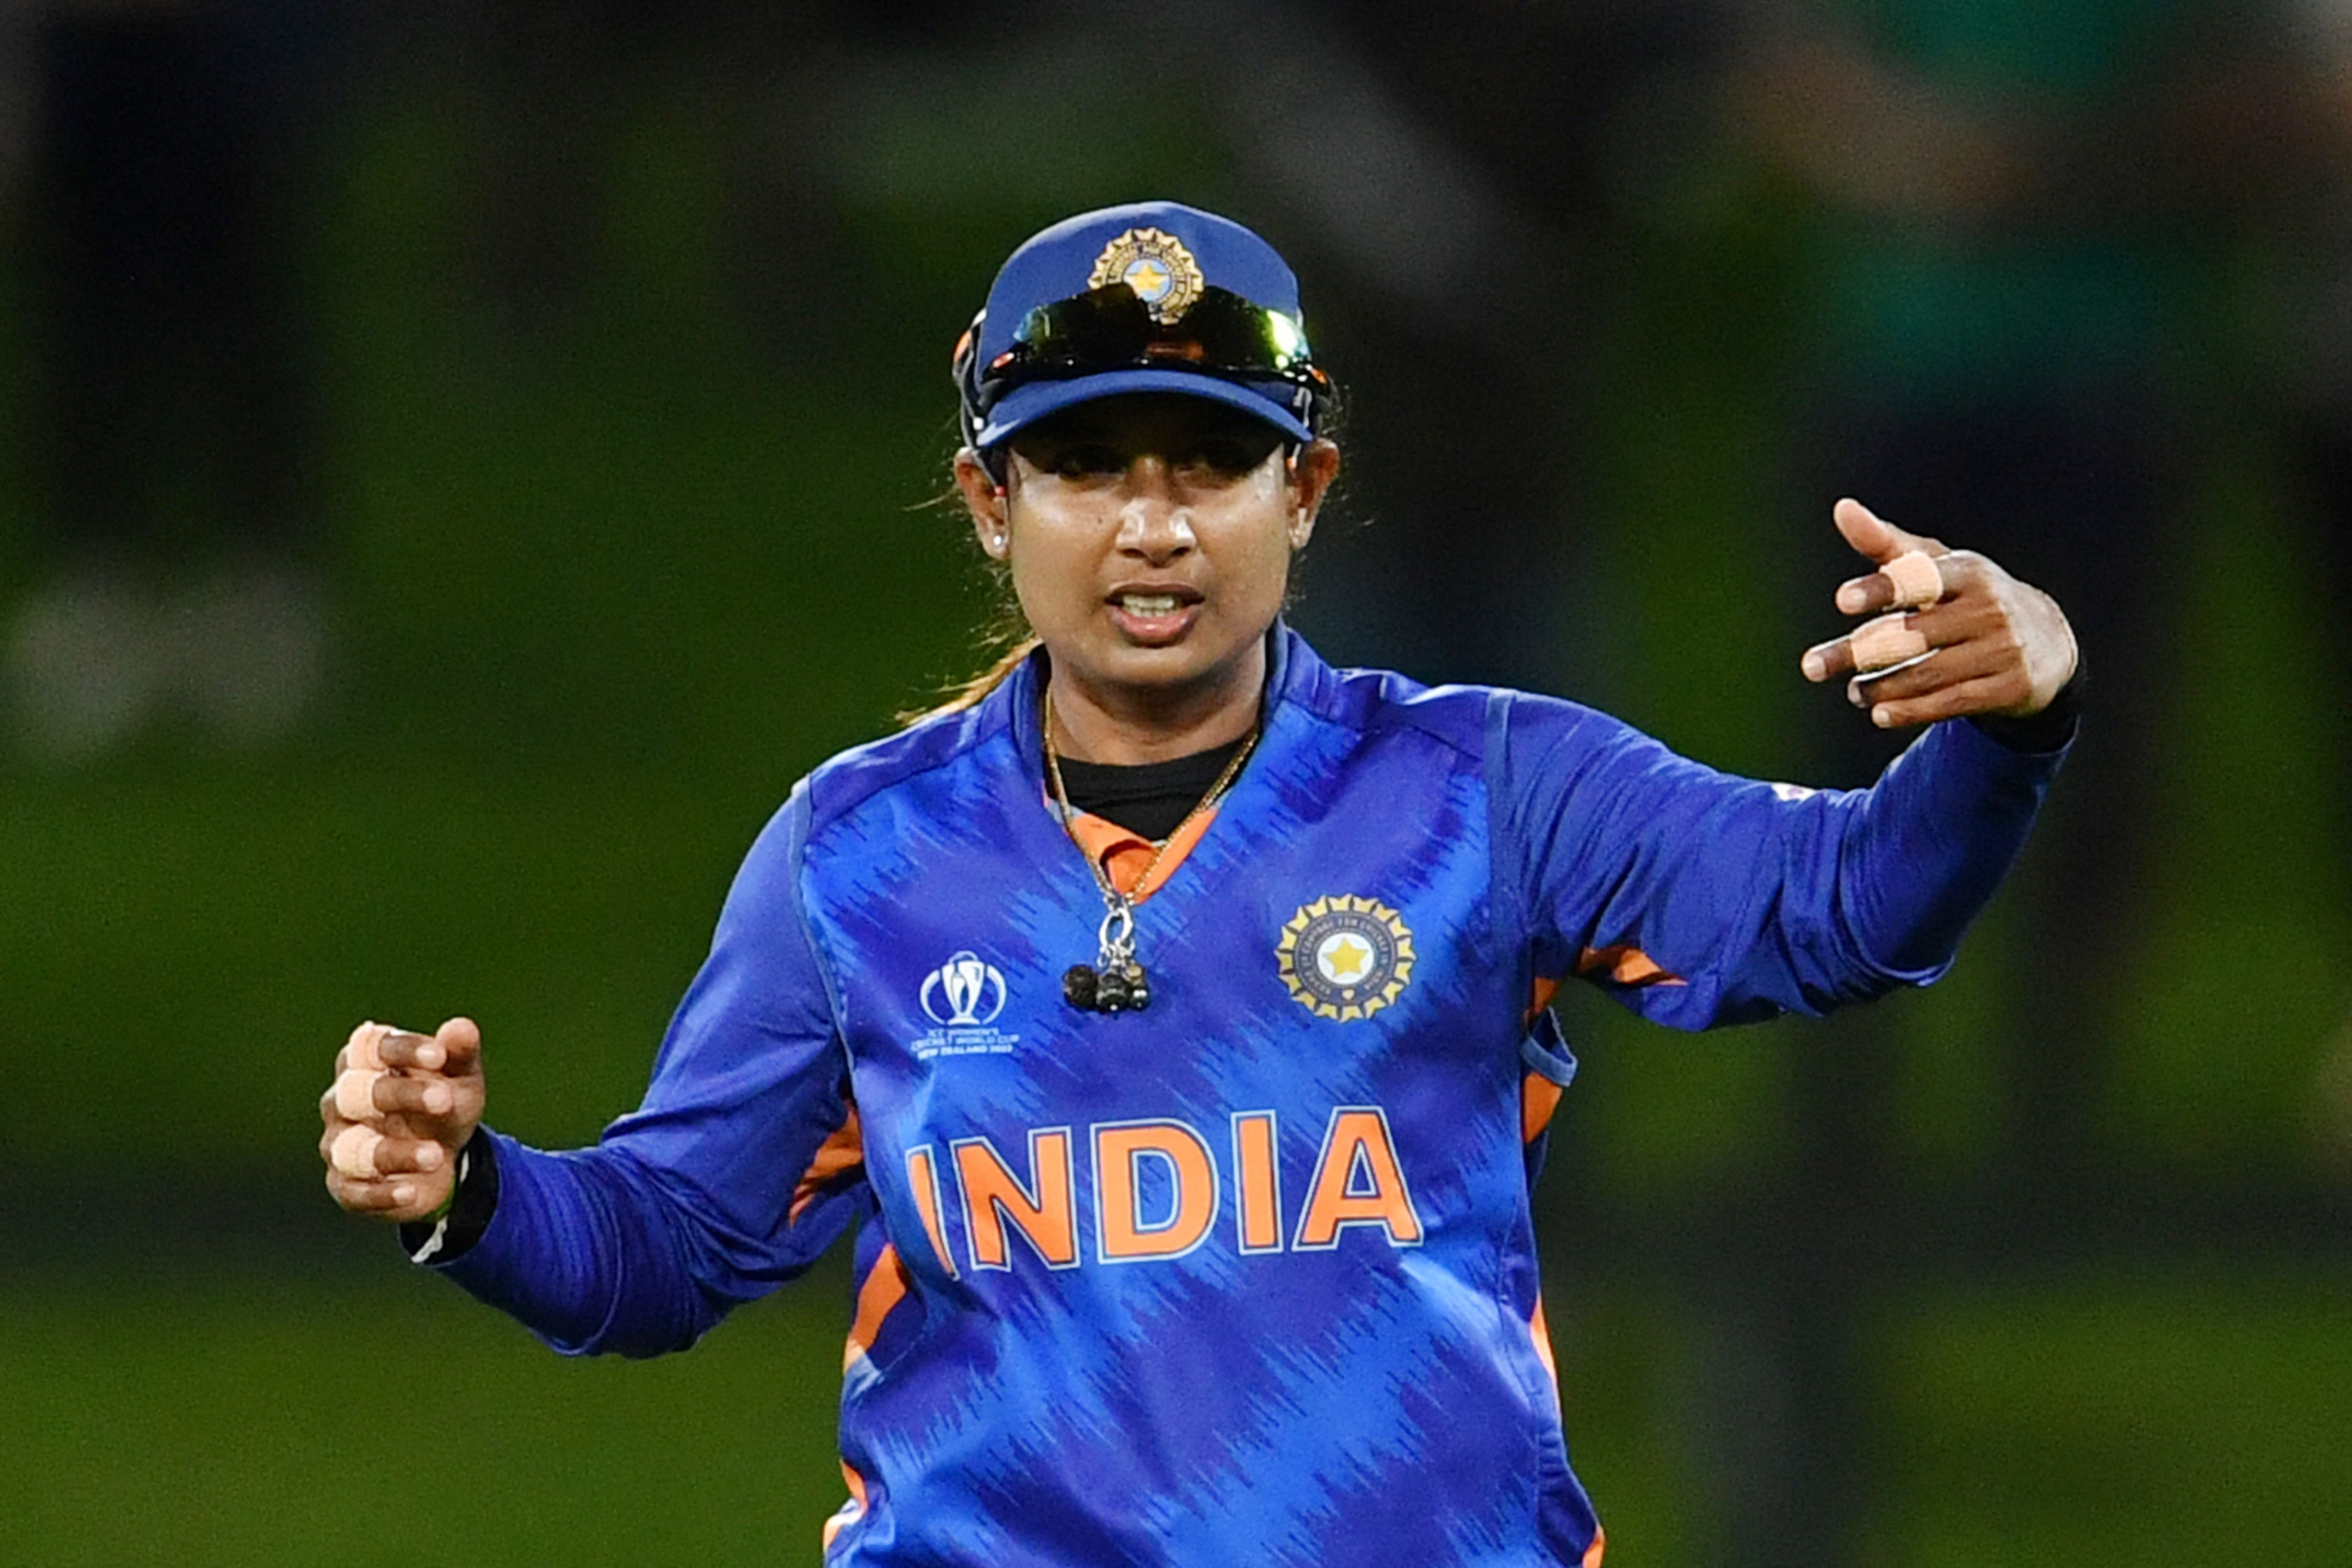 विश्व कप से बाहर होने के बाद टीम के समर्थन में उतरी कप्तान मिताली राज, कहा- लड़कियों ने 100% दिया